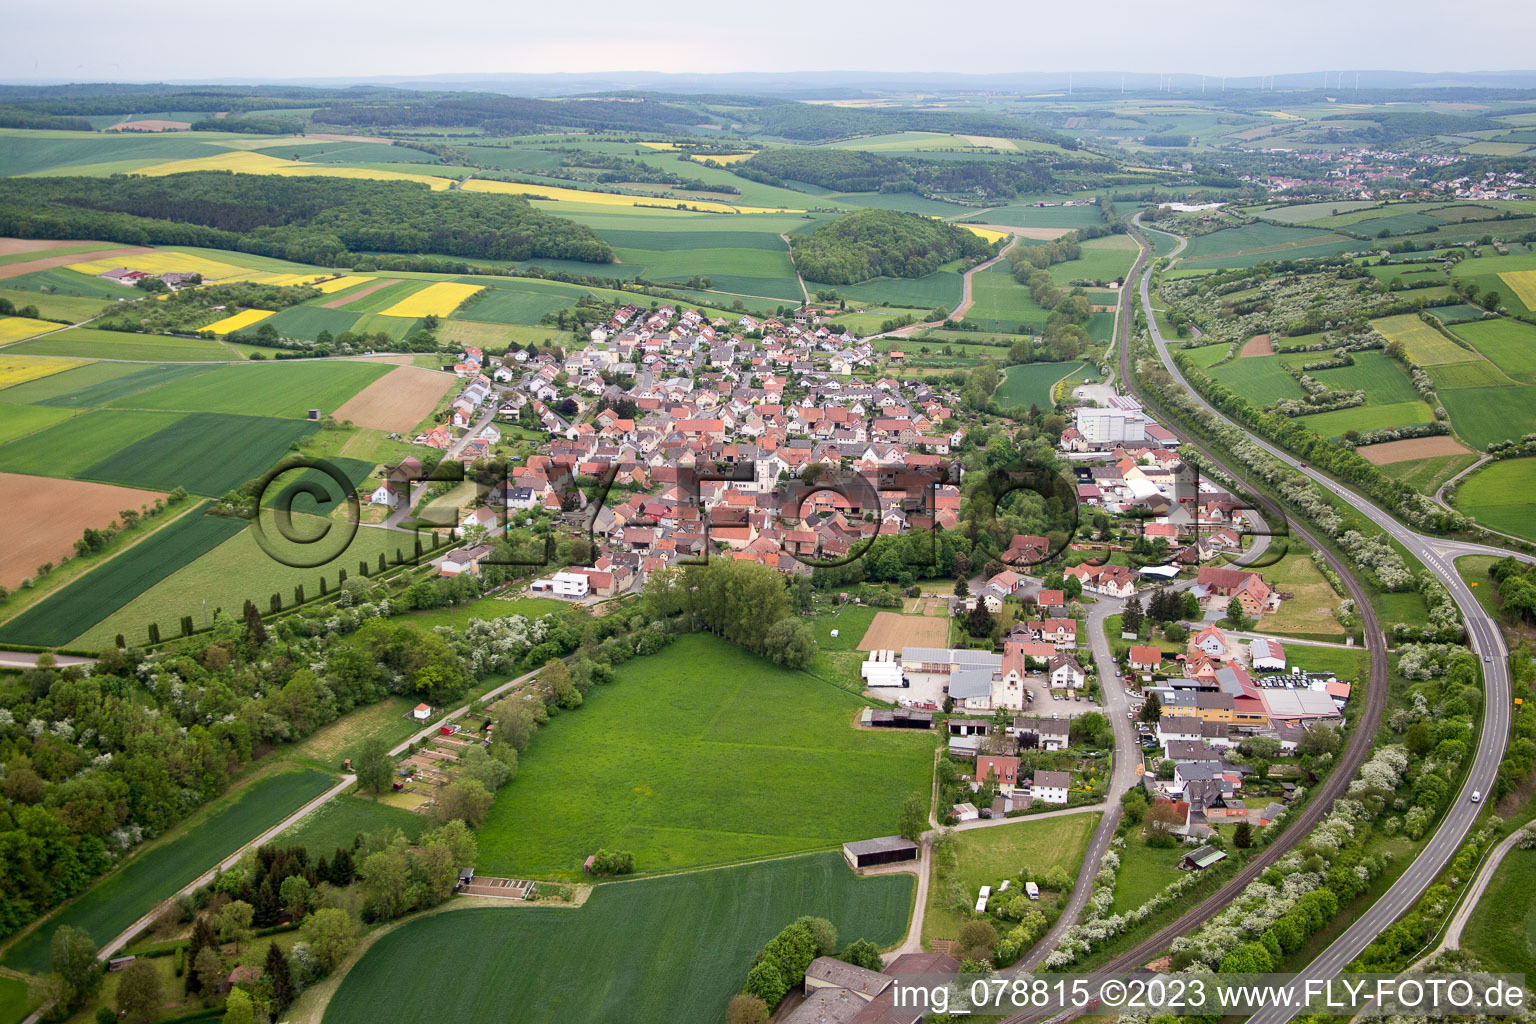 Gänheim im Bundesland Bayern, Deutschland von oben gesehen